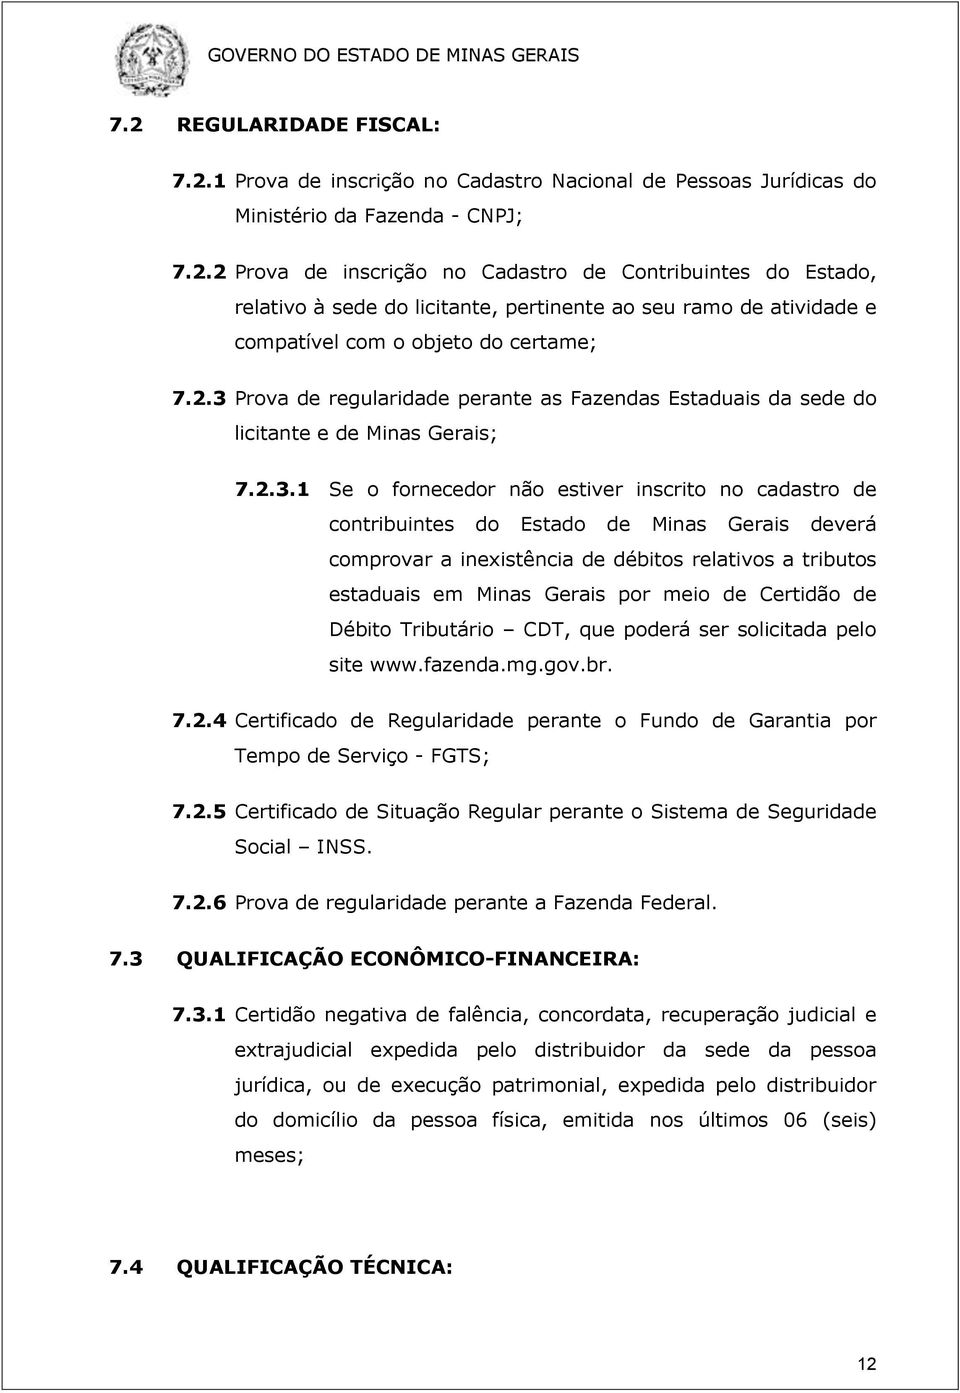 deverá comprovar a inexistência de débitos relativos a tributos estaduais em Minas Gerais por meio de Certidão de Débito Tributário CDT, que poderá ser solicitada pelo site www.fazenda.mg.gov.br. 7.2.